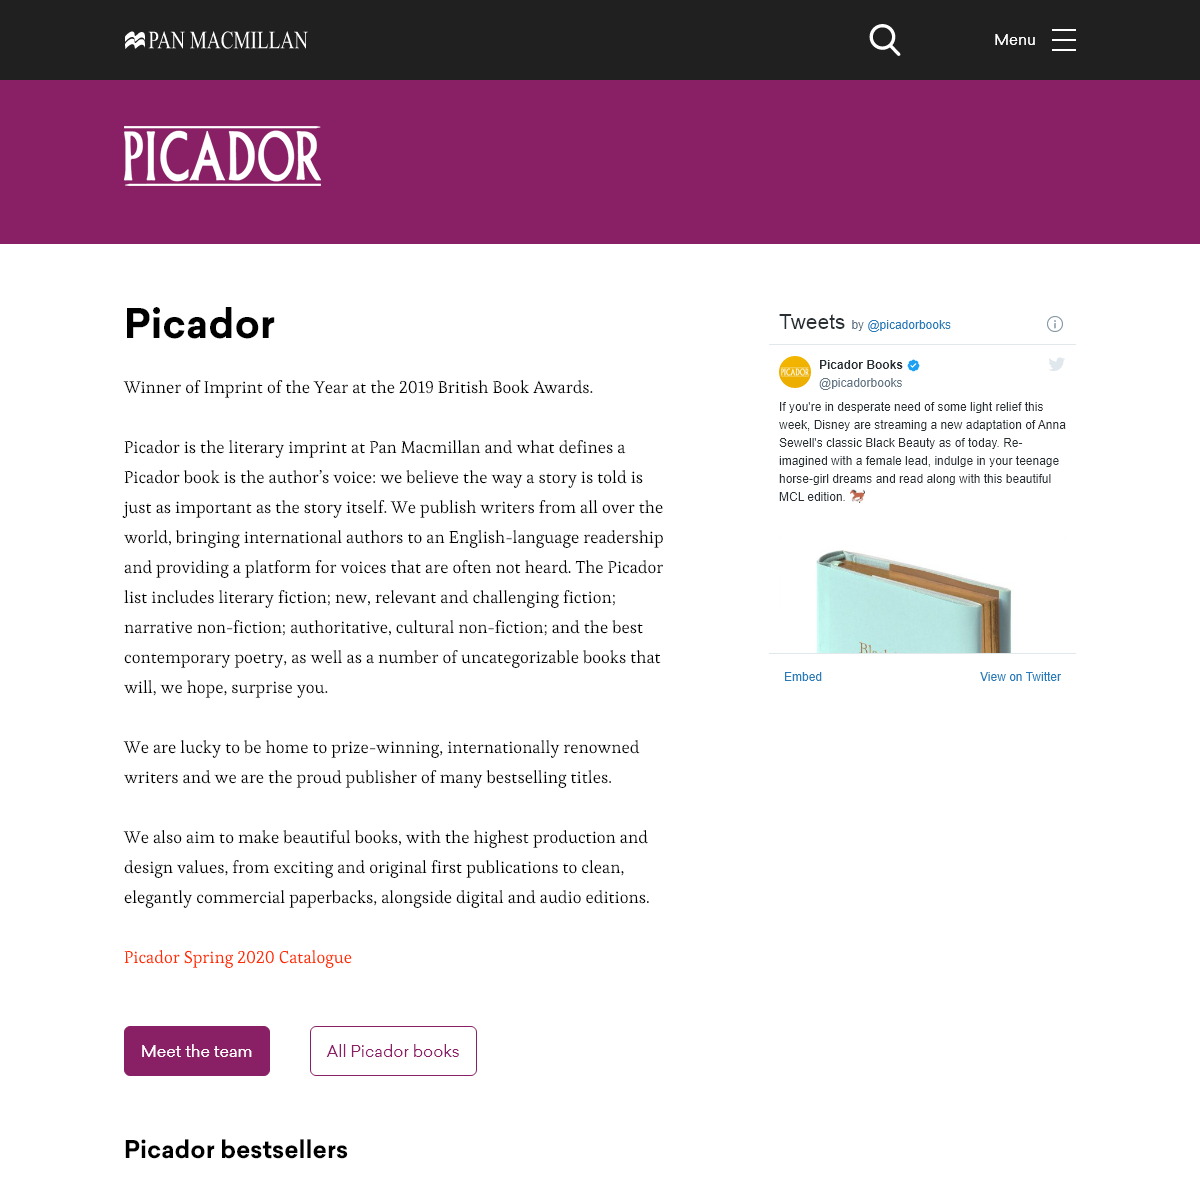 A complete backup of picador.com